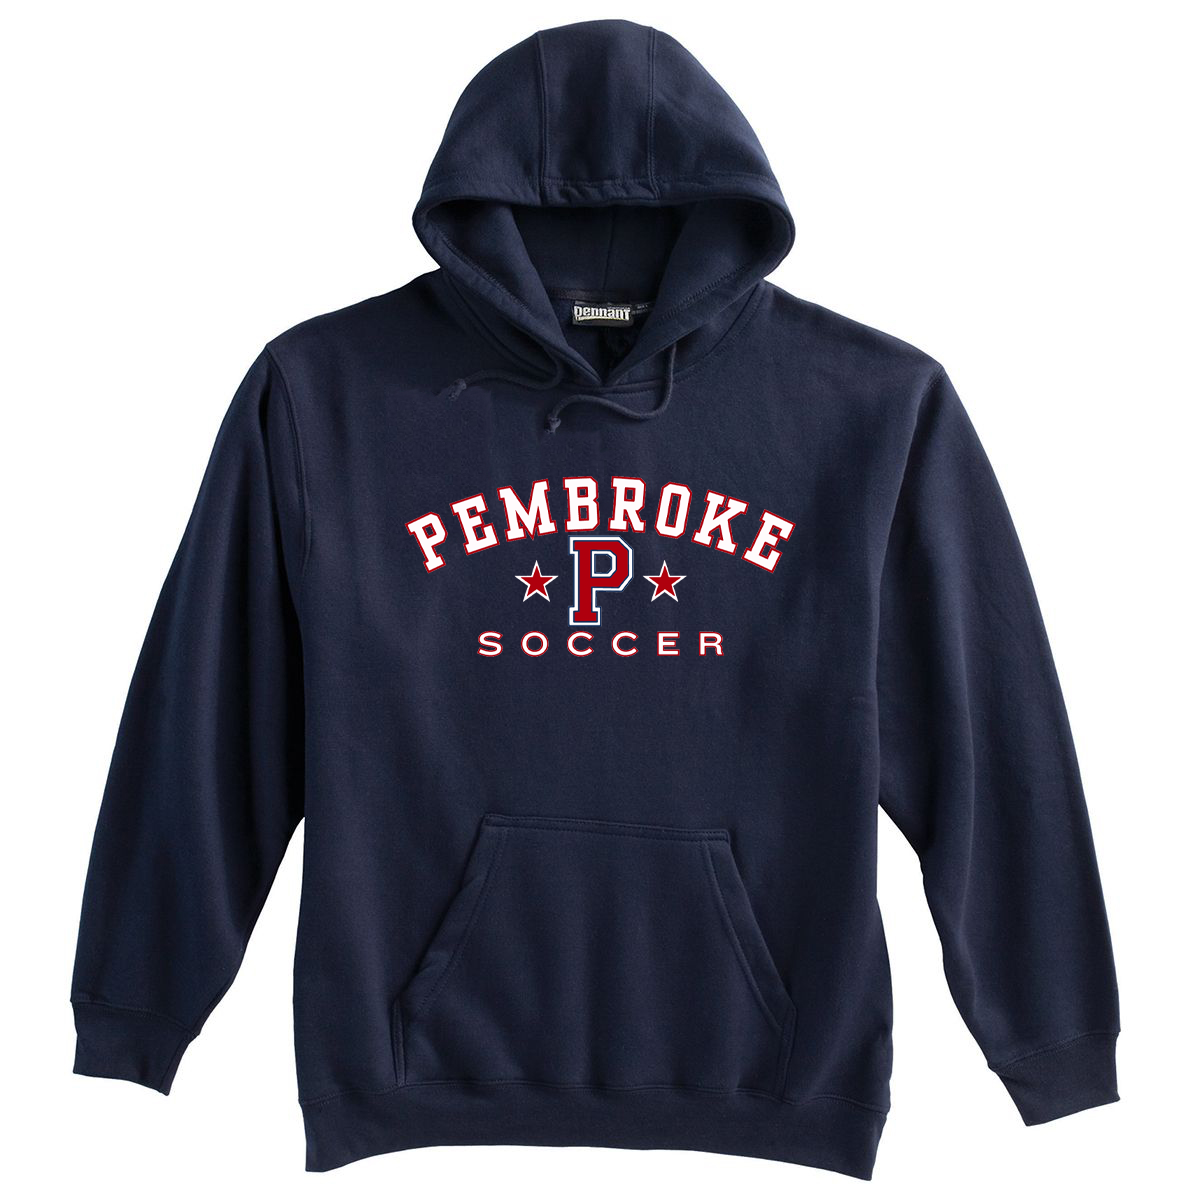 Pembroke Soccer Sweatshirt